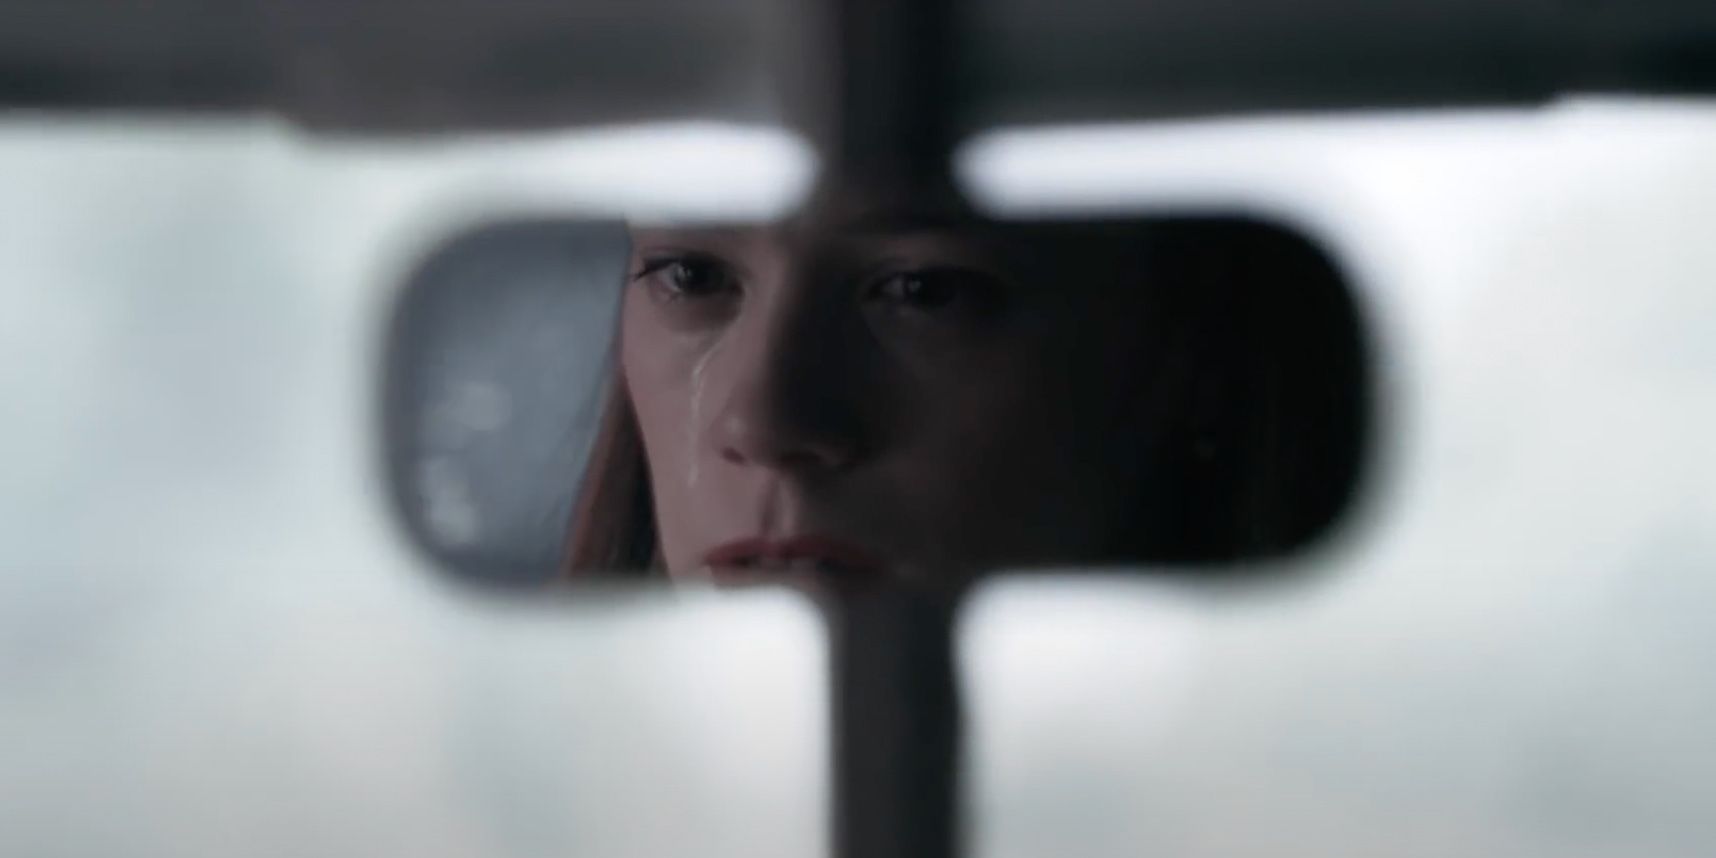 Chloe Perrie in The Queen's Gambit on Netflix